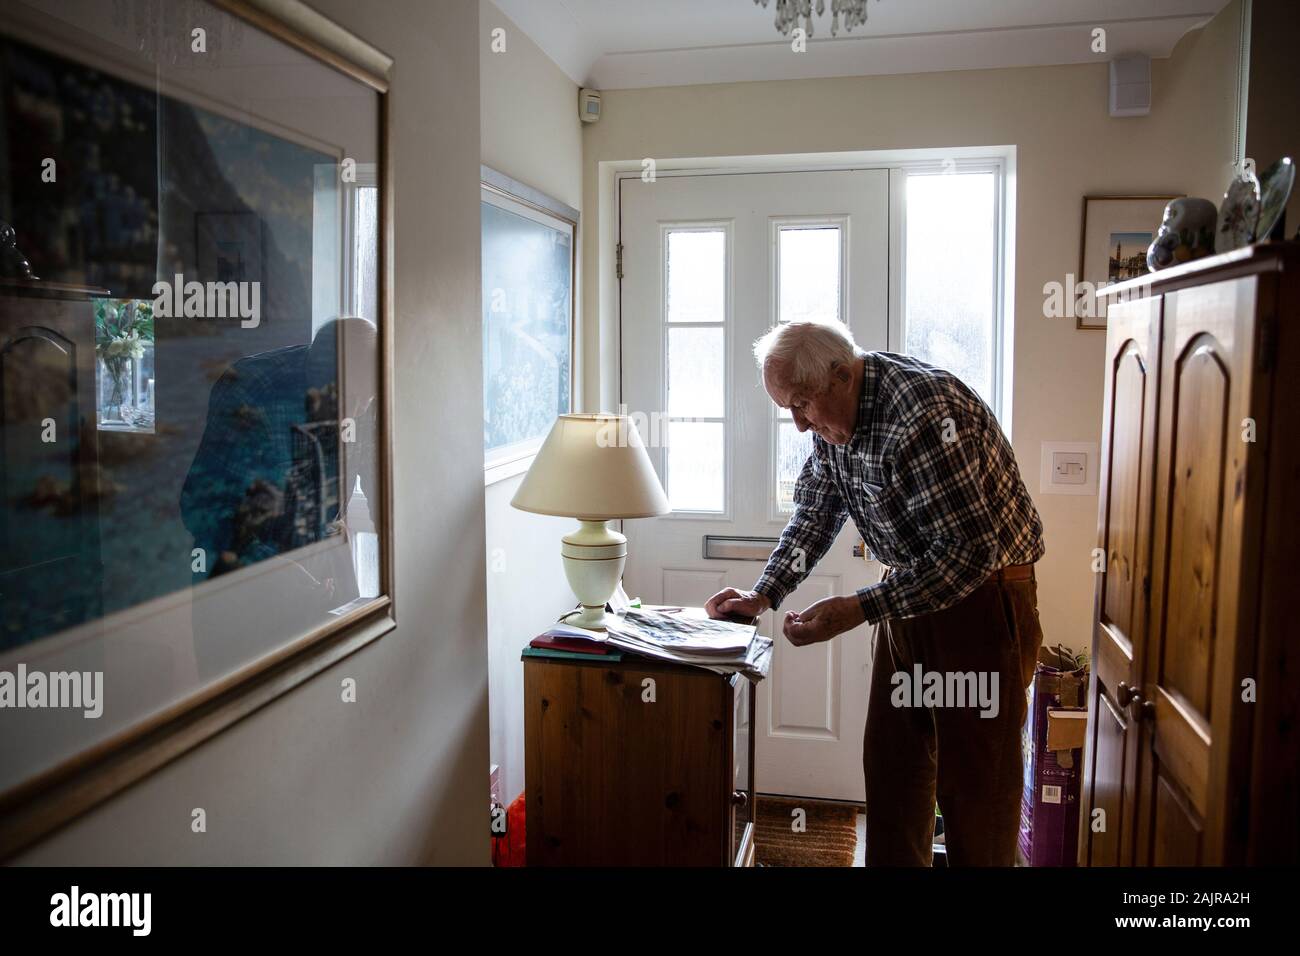 87 Jahre alte ältere Menschen, die allein leben, in seinem Flur, England, Vereinigtes Königreich Stockfoto